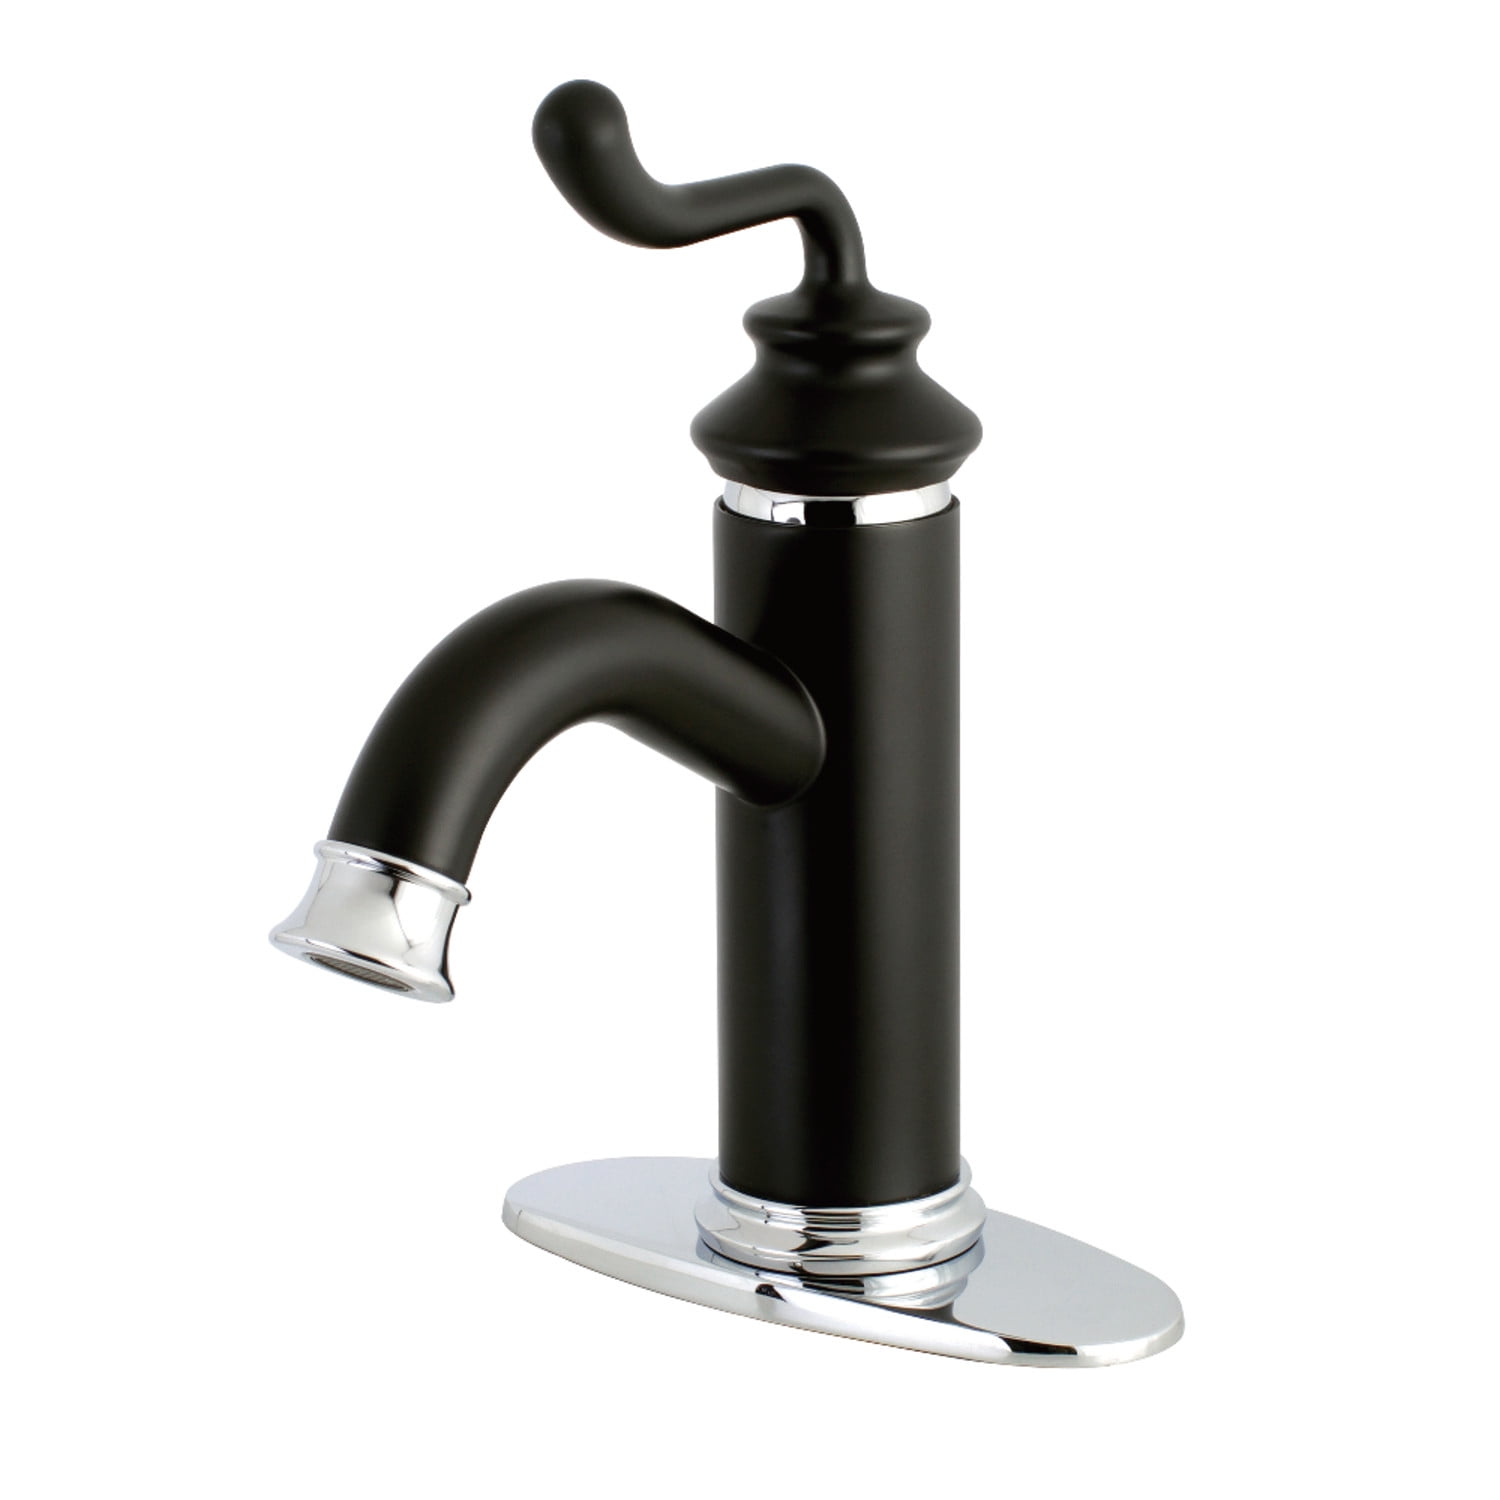 Chrome Bathroom Sink Faucet Mixer Hole Handle Mono Bloc High Arc Spout Drain CA 